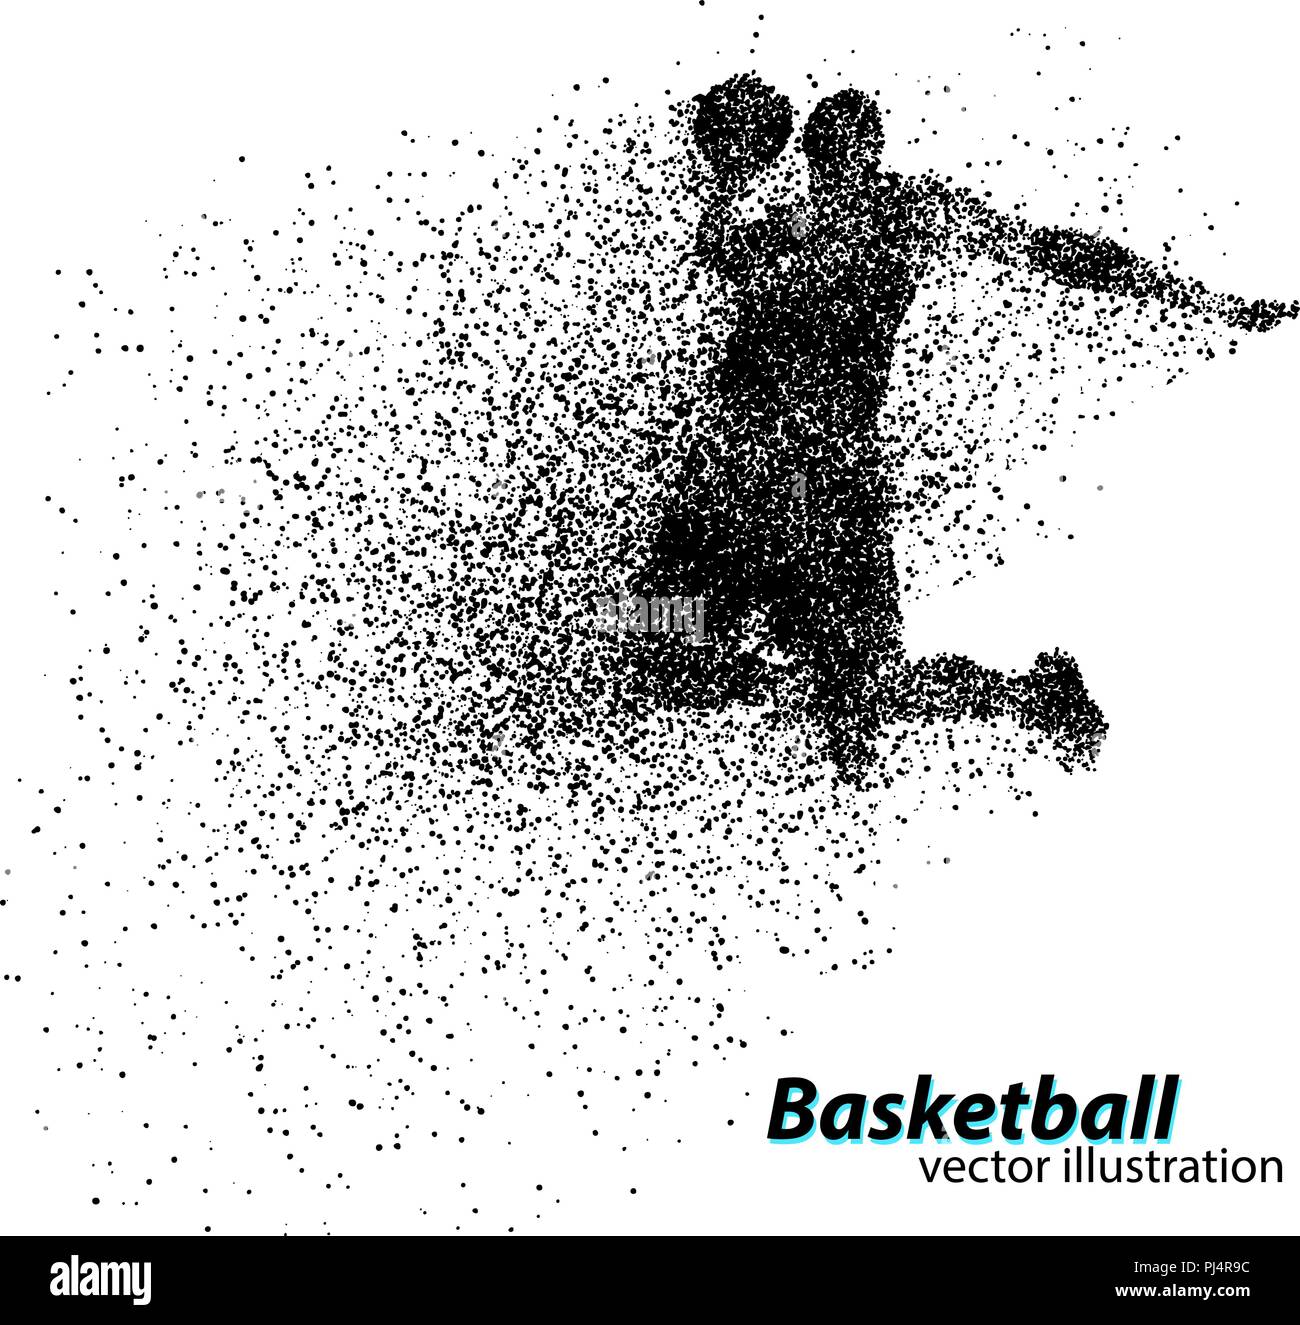 Basketball player von teilchen. Hintergrund und Text auf einem separaten Layer, Farbe kann mit einem Klick geändert werden. Basketball Abstract Stock Vektor